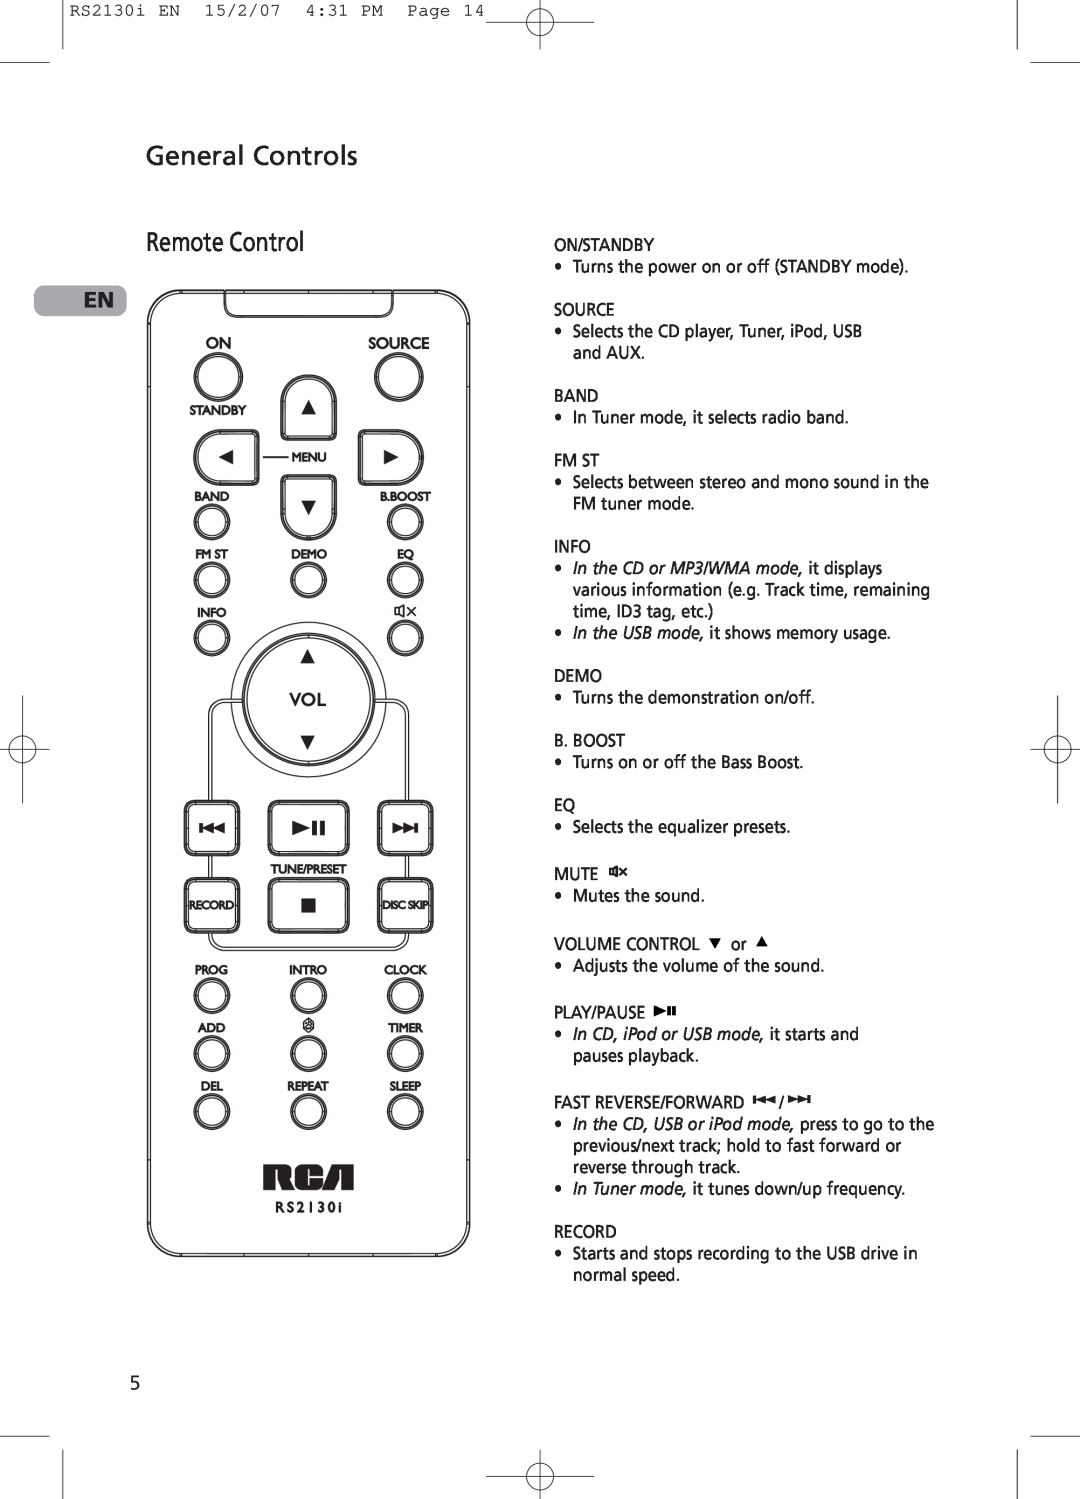 RCA RS2130i user manual General Controls Remote Control 